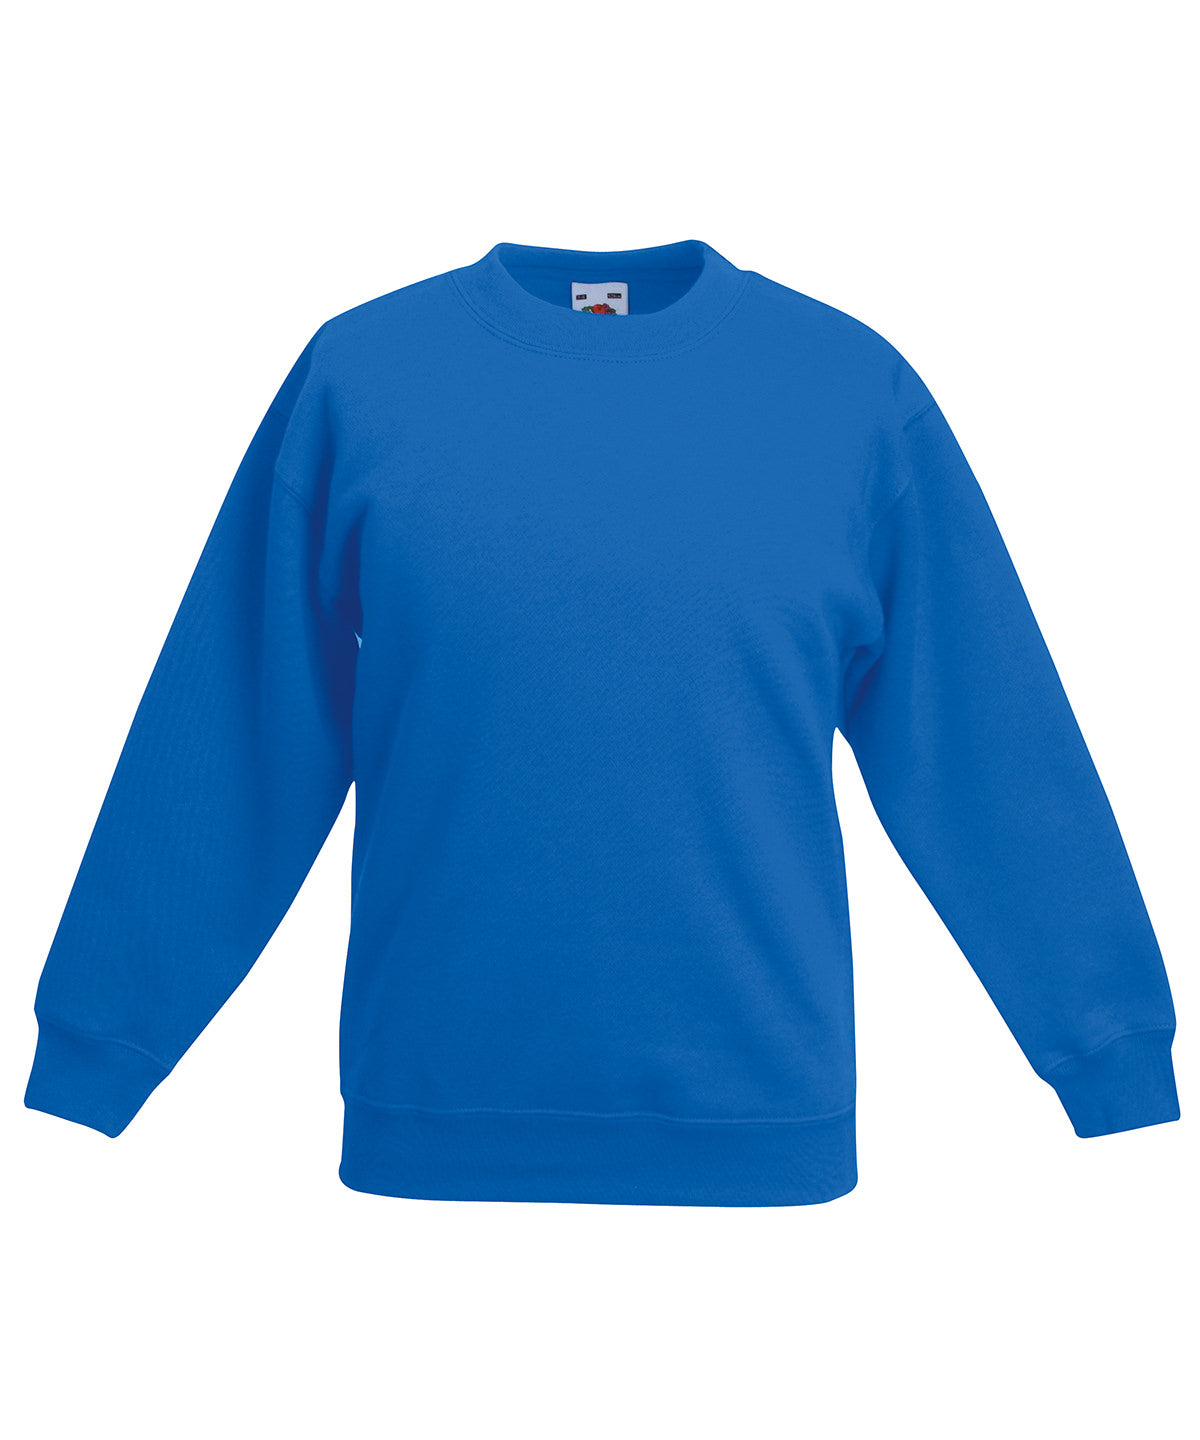 Personalised Sweatshirts - Bottle Fruit of the Loom Kids premium set-in sweatshirt